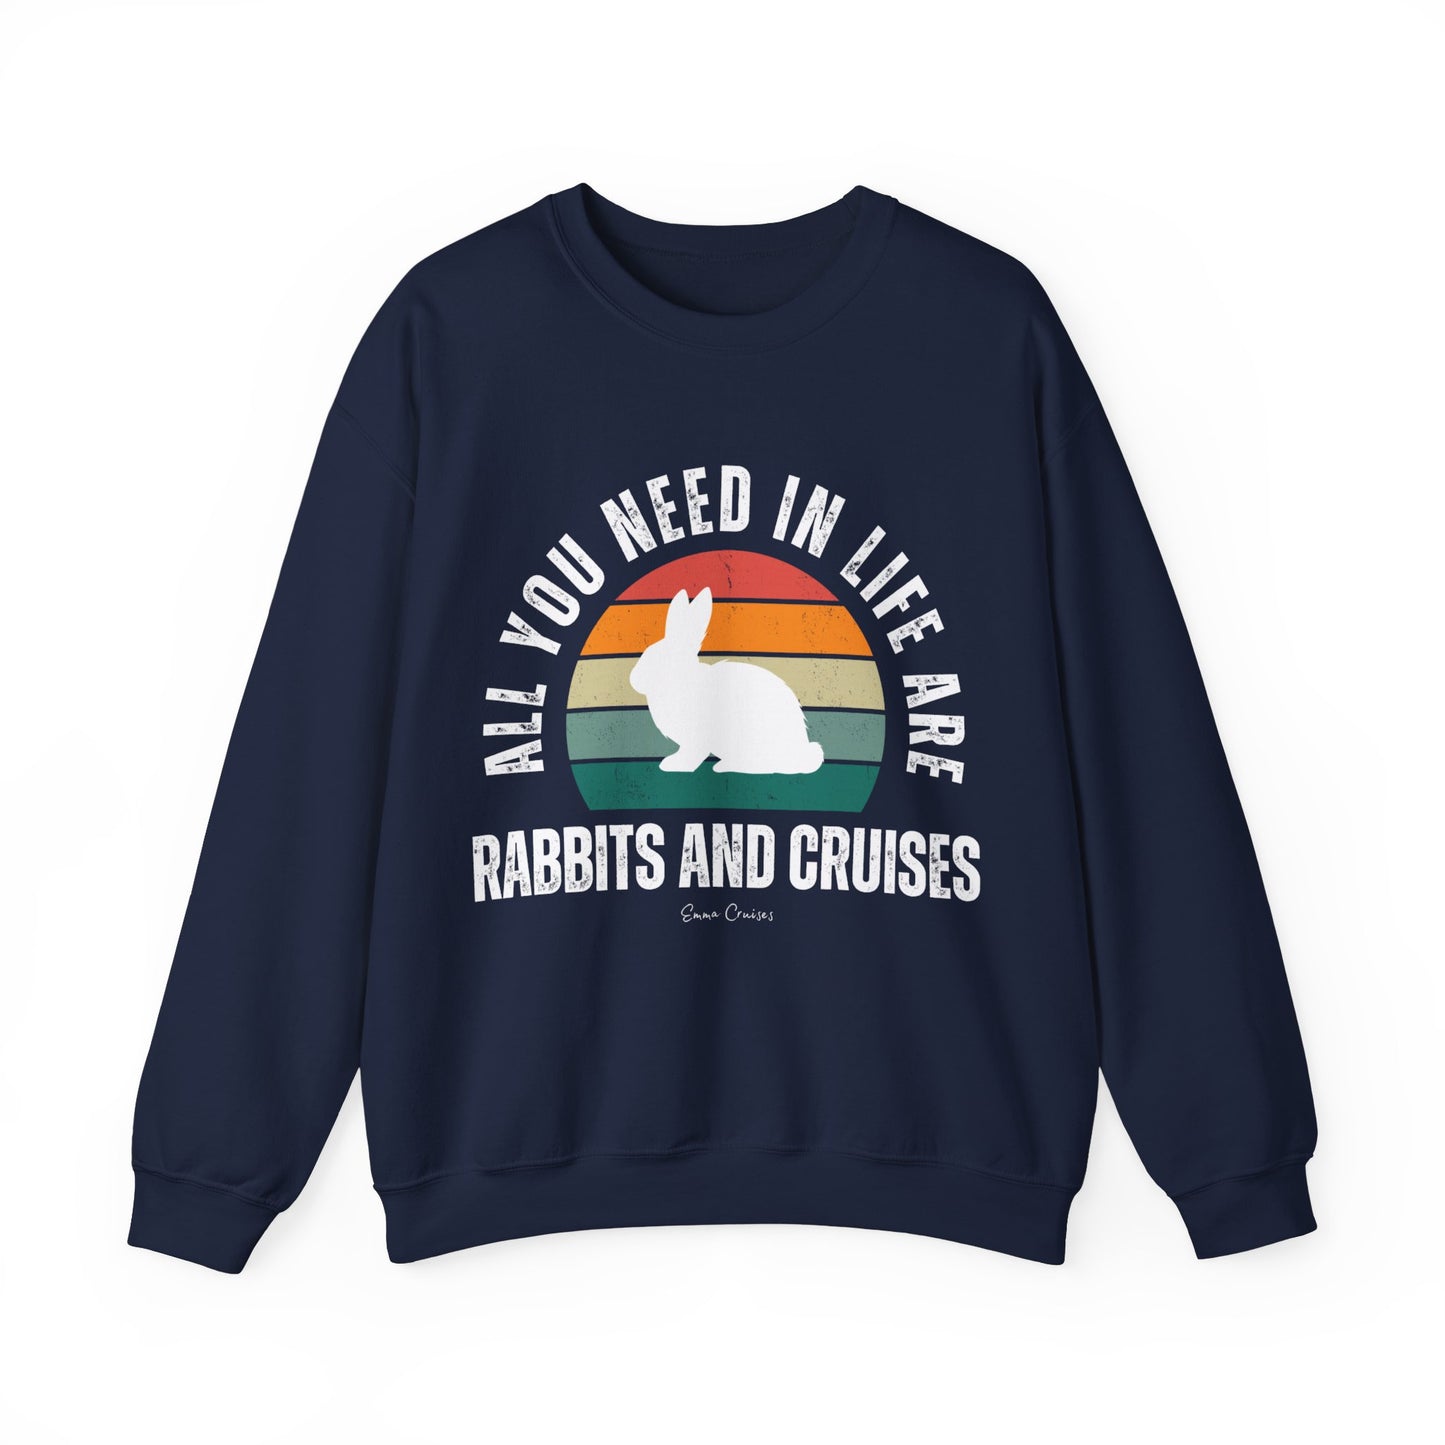 Rabbits and Cruises - UNISEX Crewneck Sweatshirt